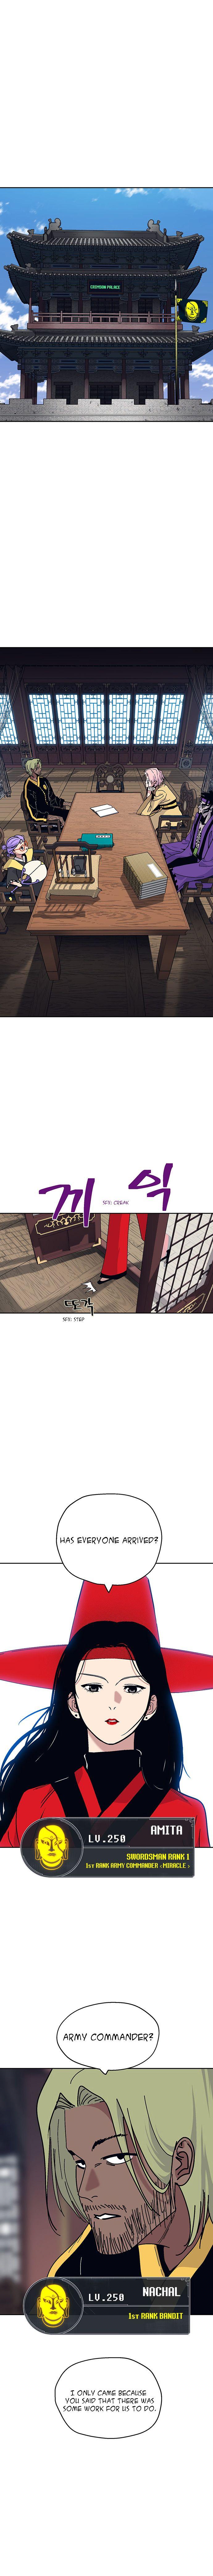 Taebaek: The Tutorial Man - Page 2